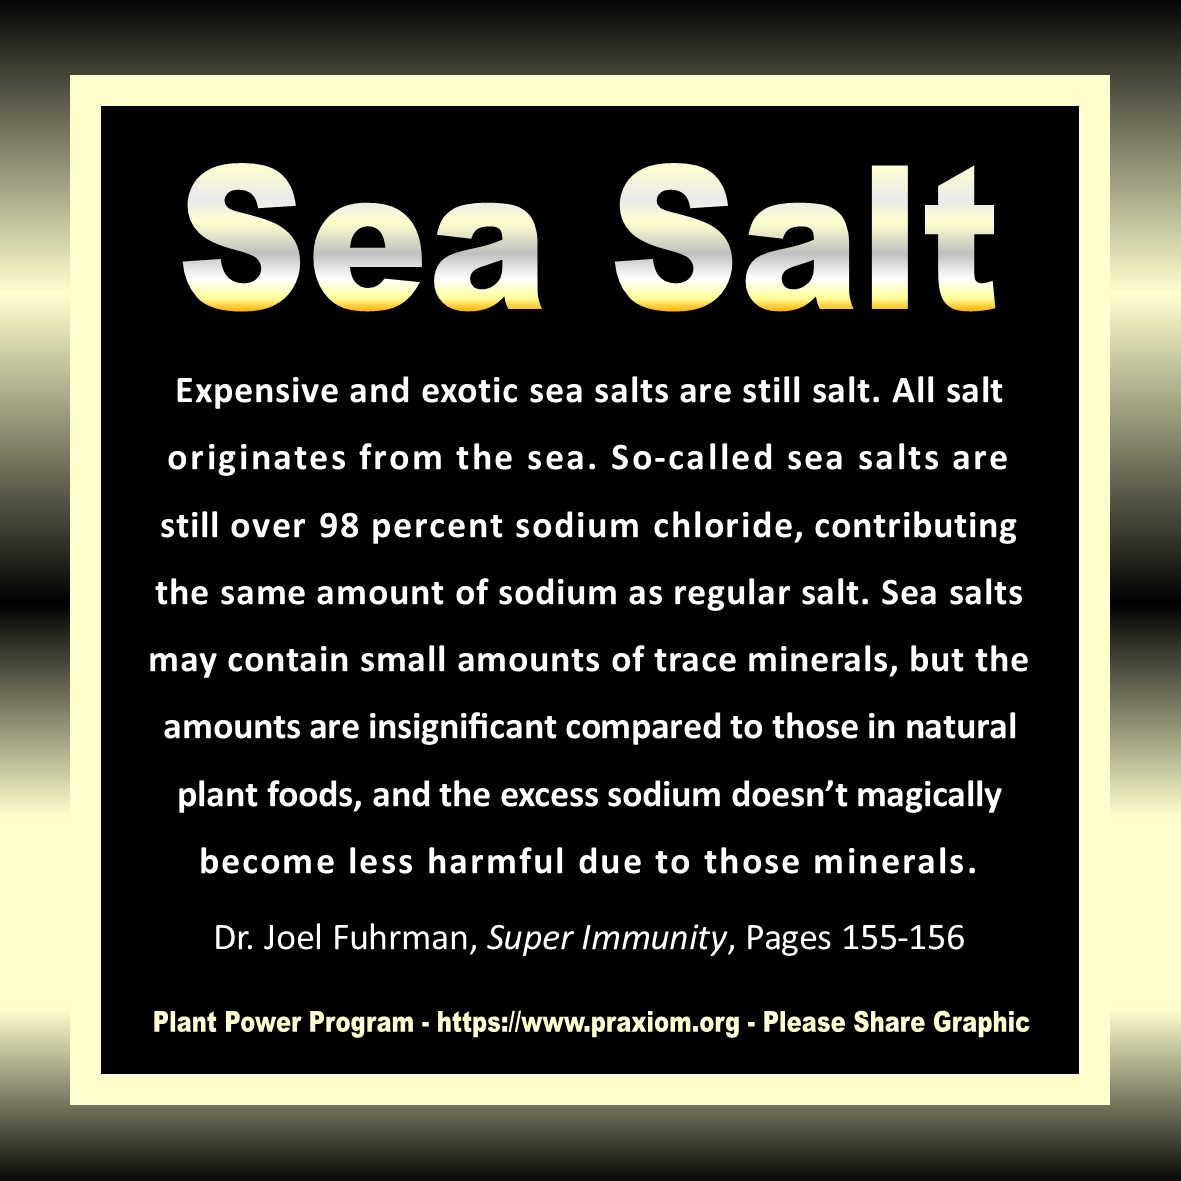 Sea Salt is Harmful - Dr. Joel Fuhrman